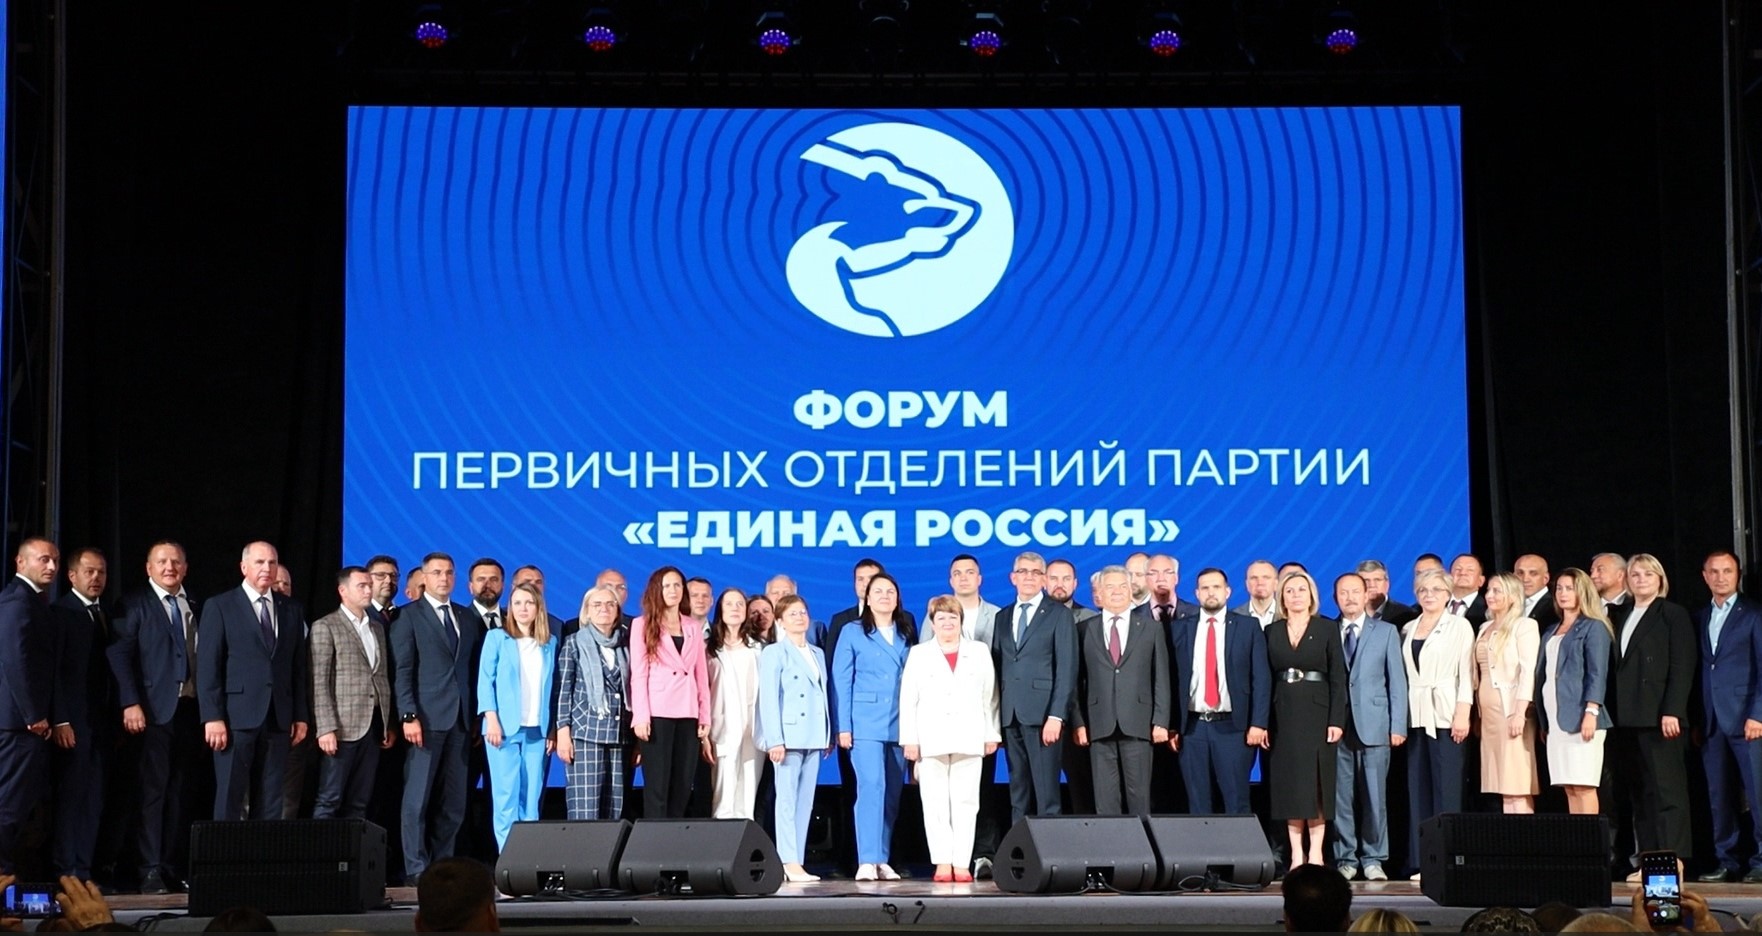 В Туле на форуме первичных отделений партии "Единая Россия" подвели итоги пятилетней работы